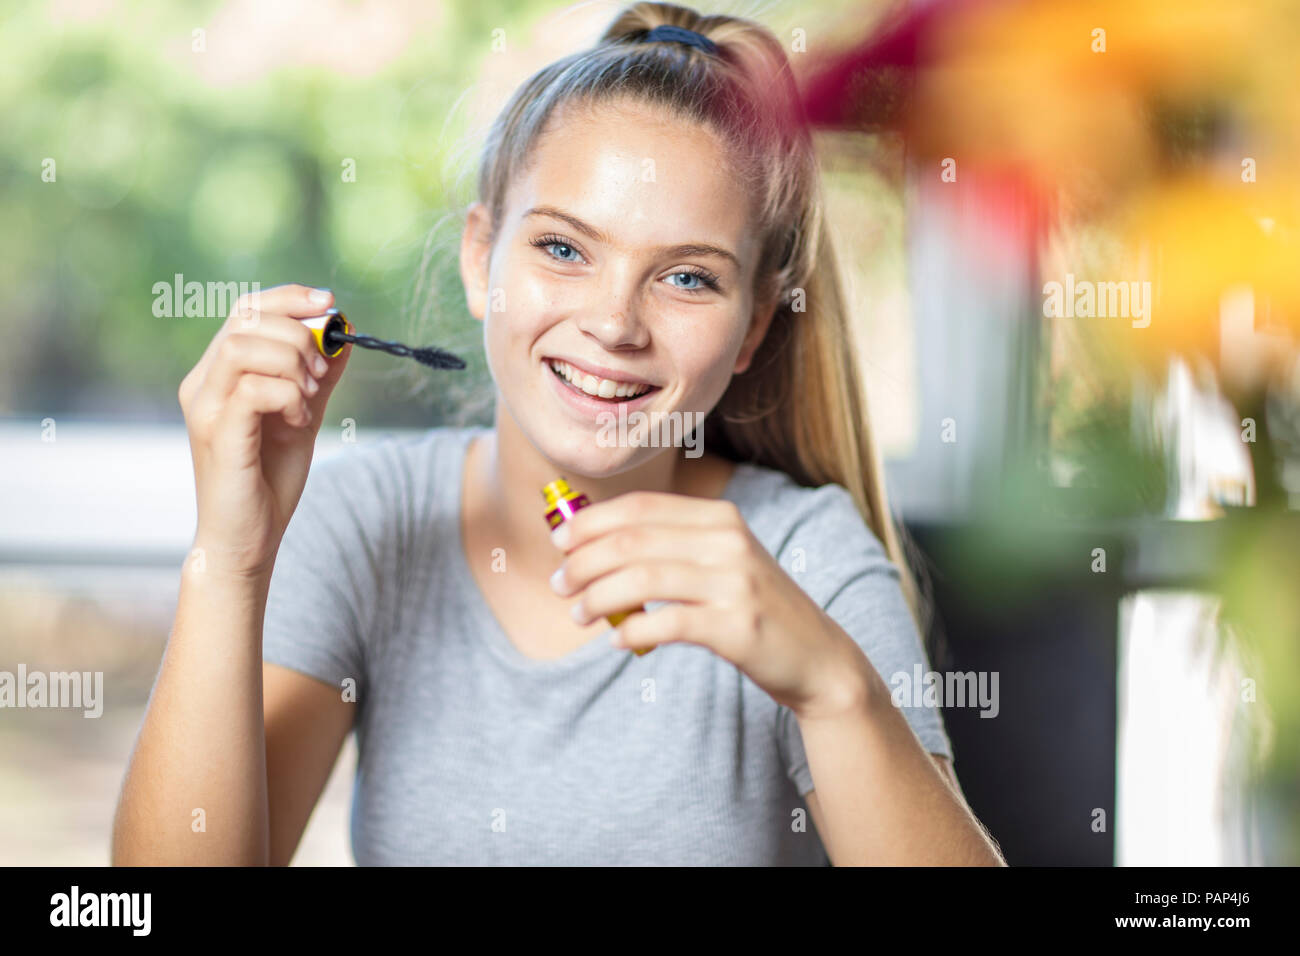 Retrato de una adolescente sonriente al maquillaje Foto de stock